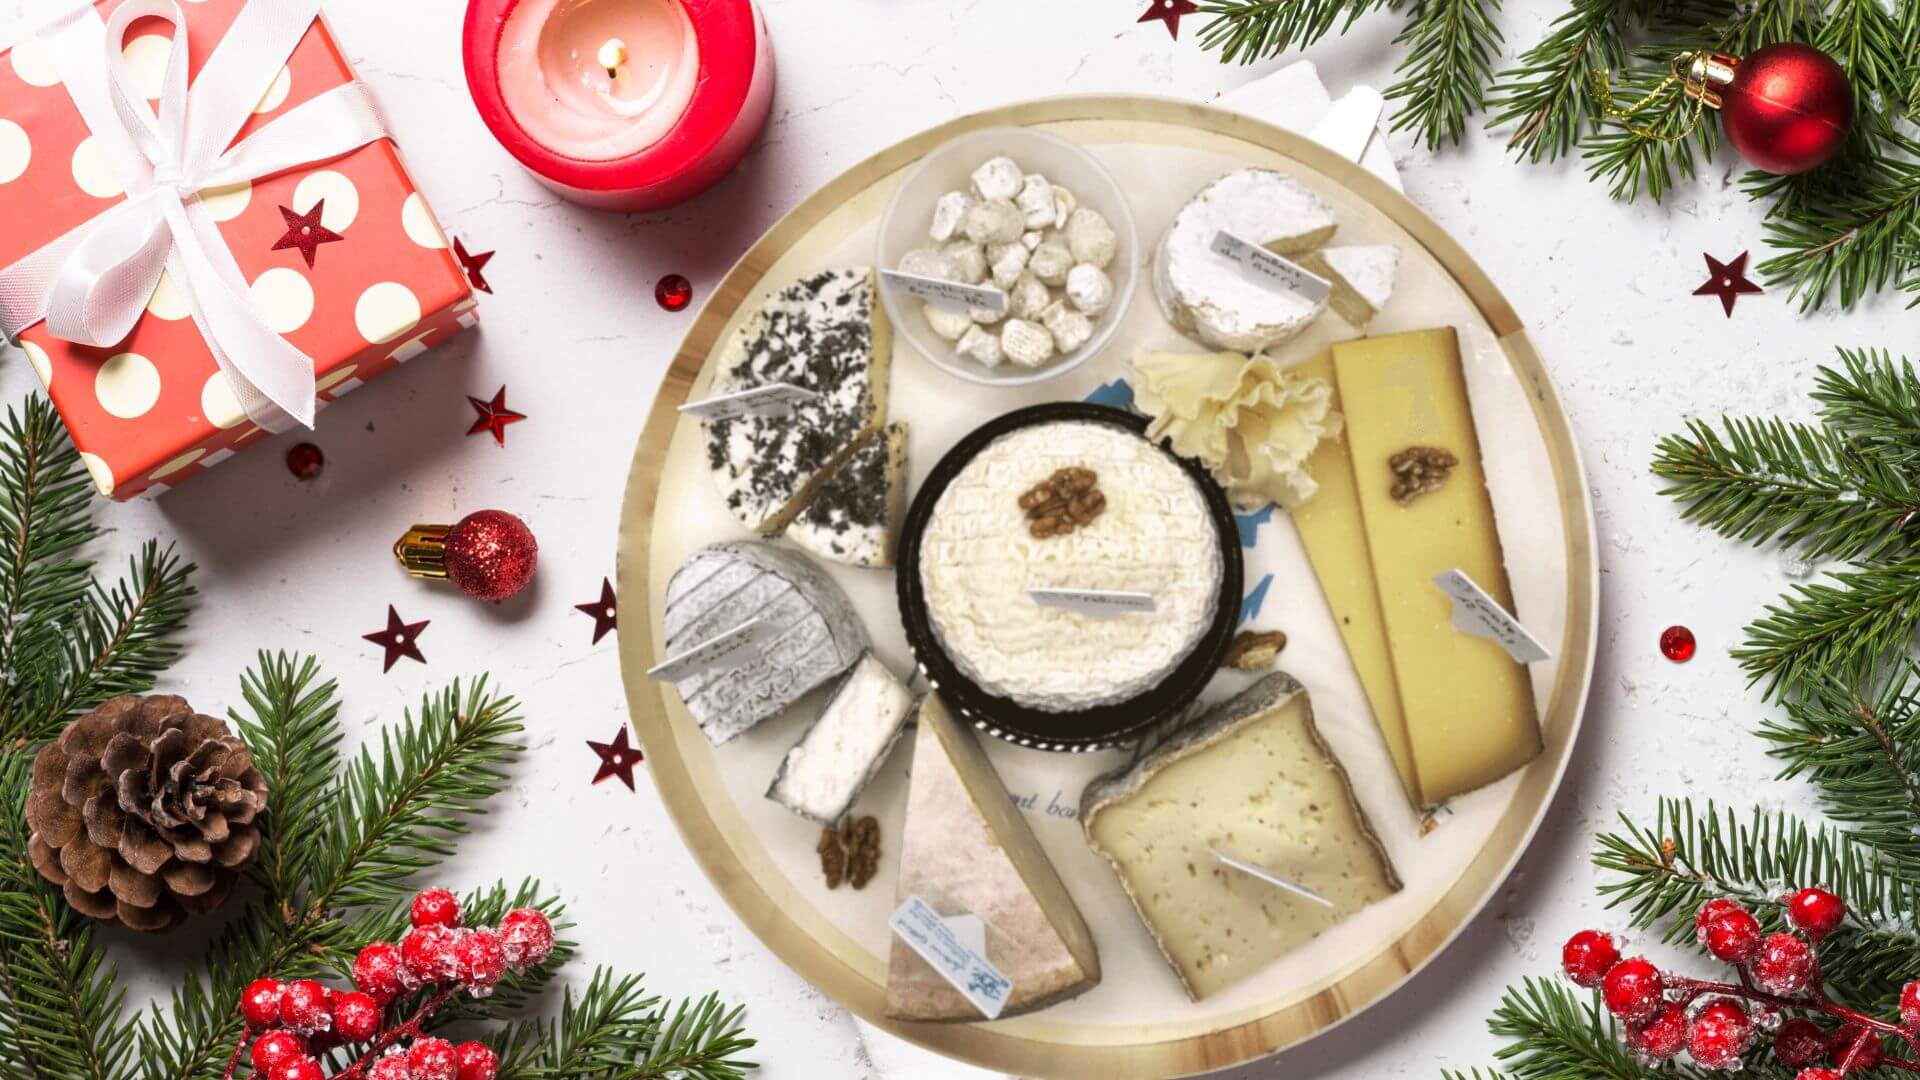 Réservez vos plateaux de fromage et cadeaux pour les fêtes !